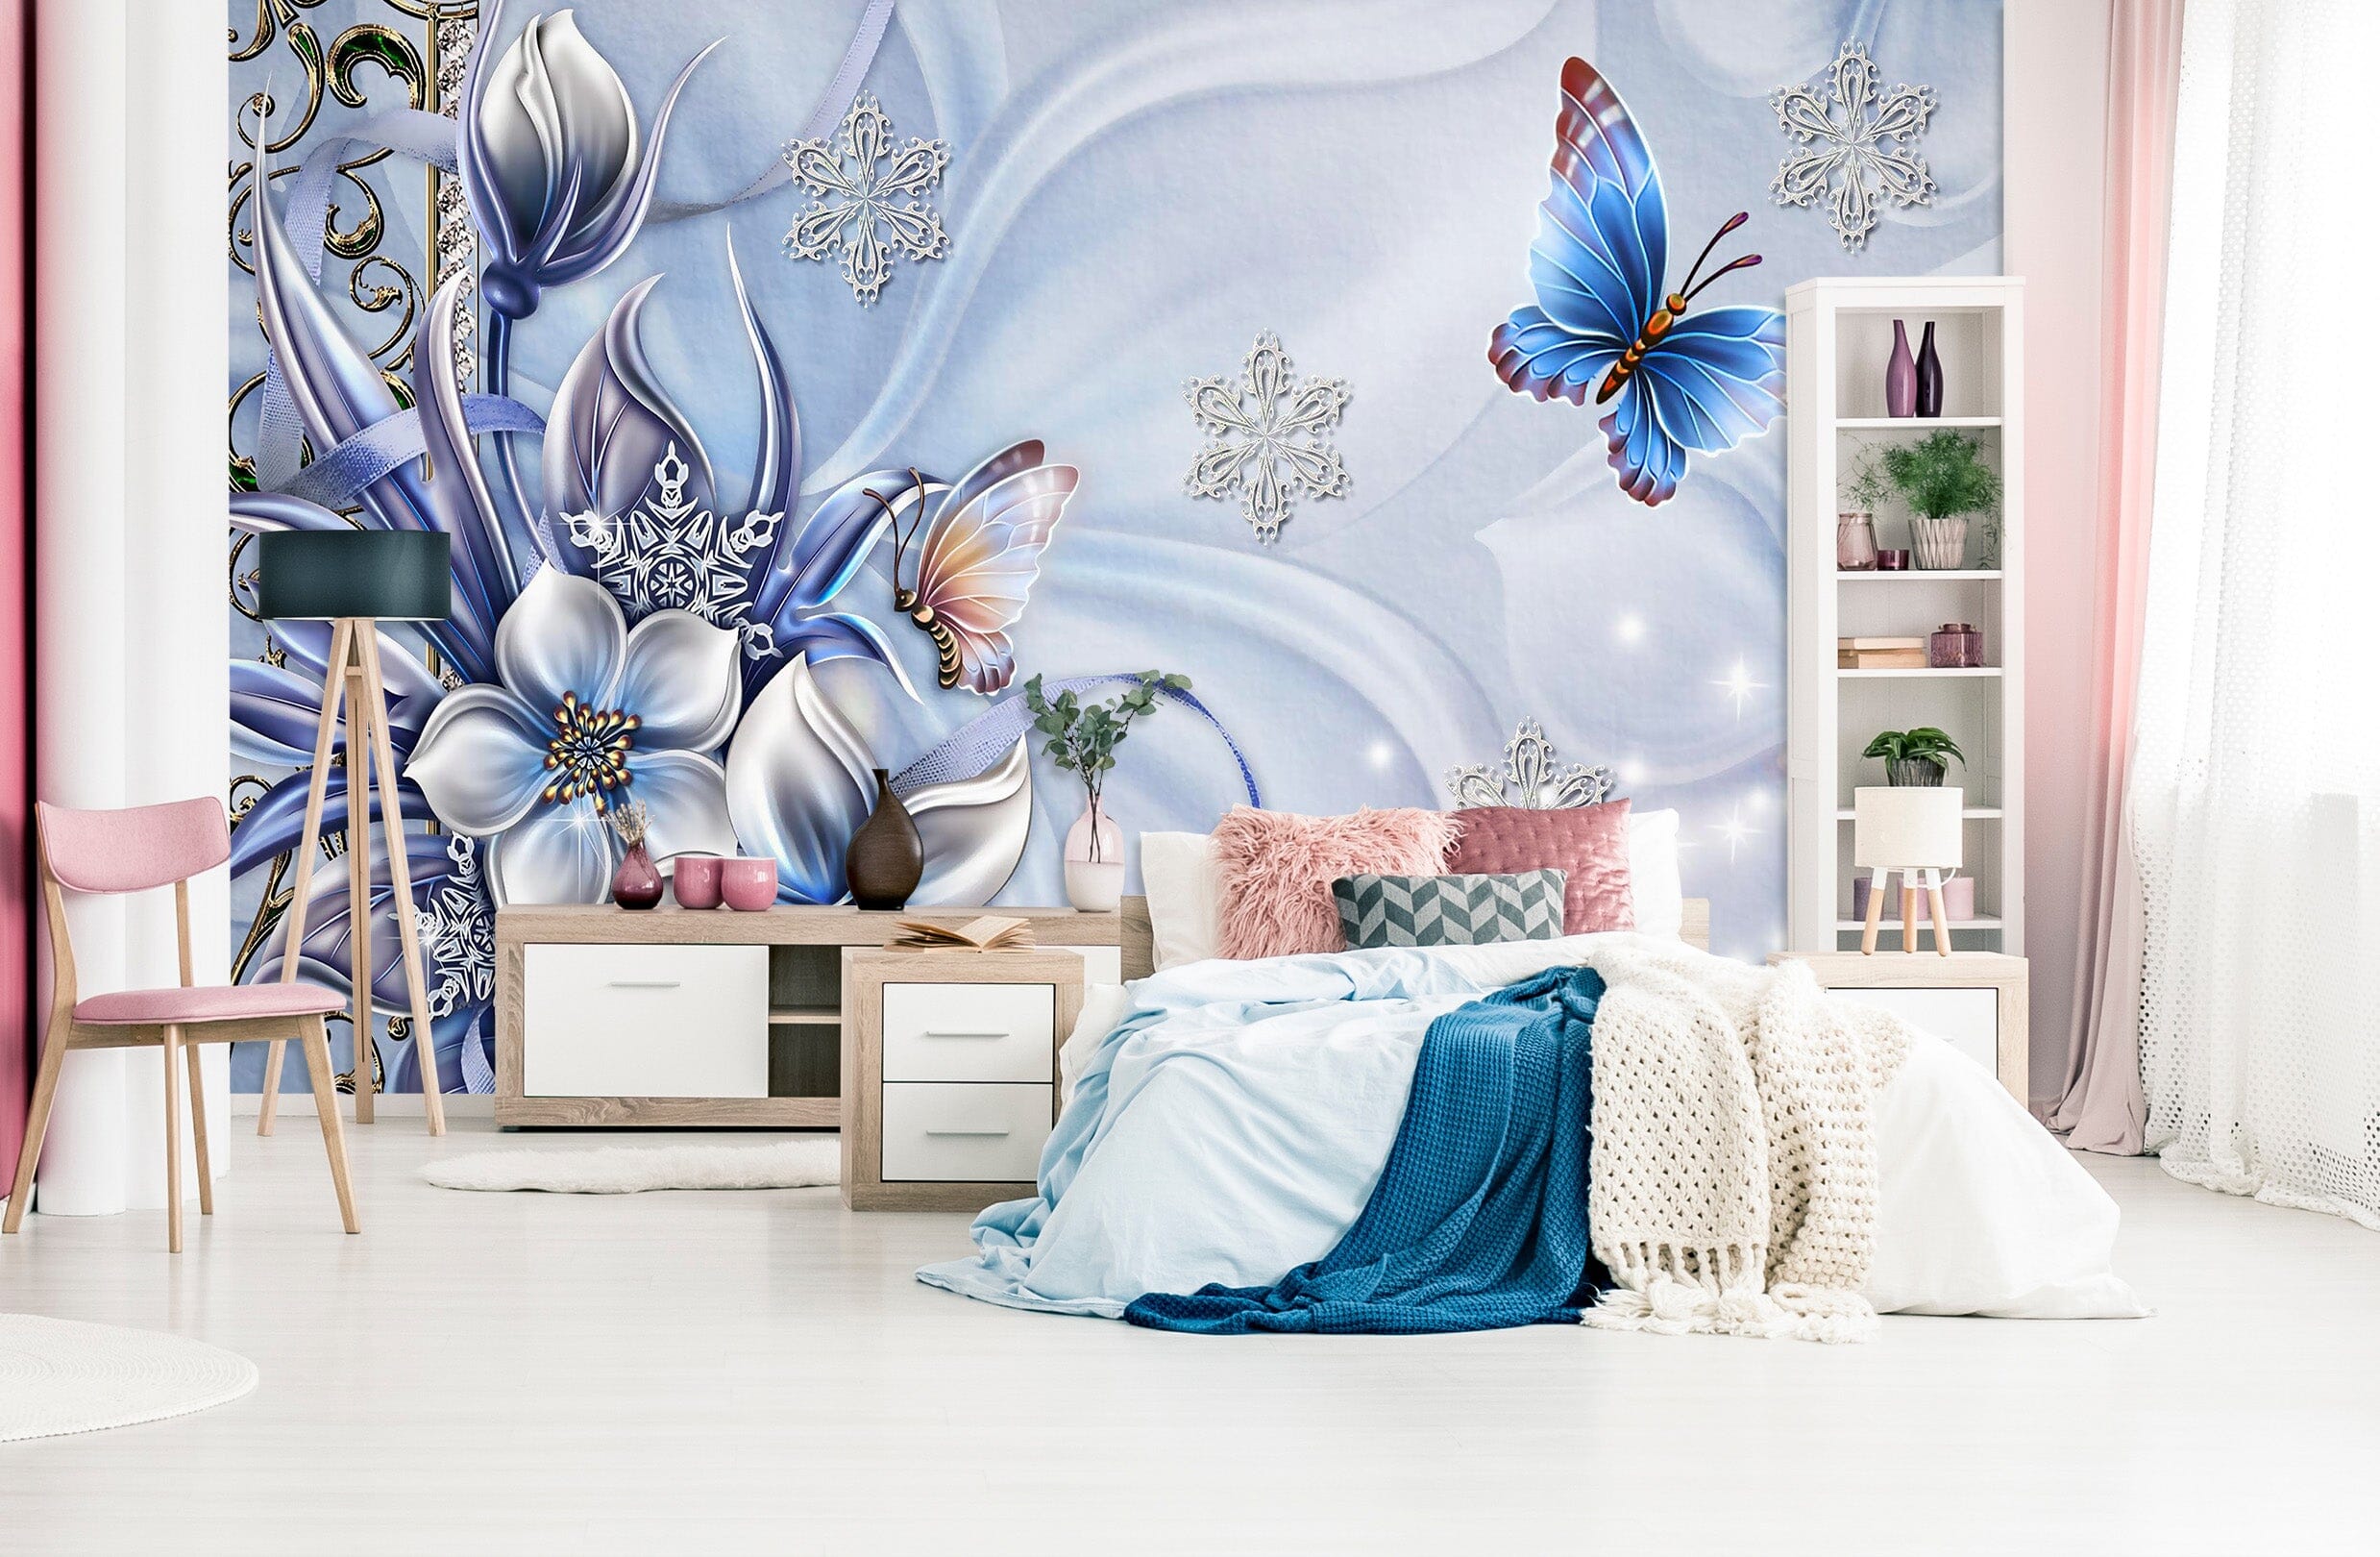 3D Flower Butterfly 1709 Wall Murals Wallpaper AJ Wallpaper 2 